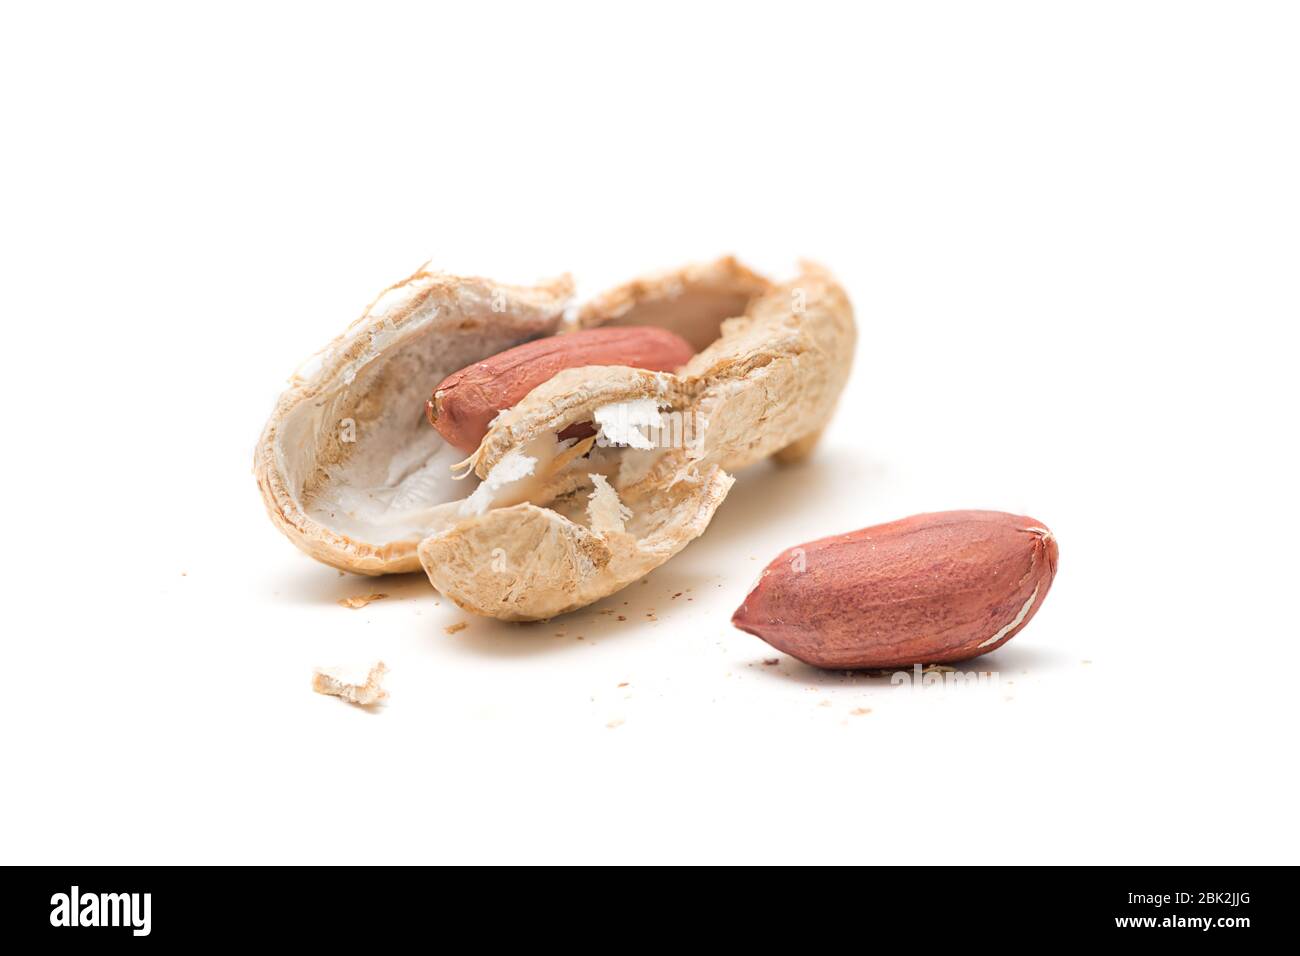 vista ravvicinata di un guscio di arachidi cruda aperto con due noci su sfondo bianco Foto Stock